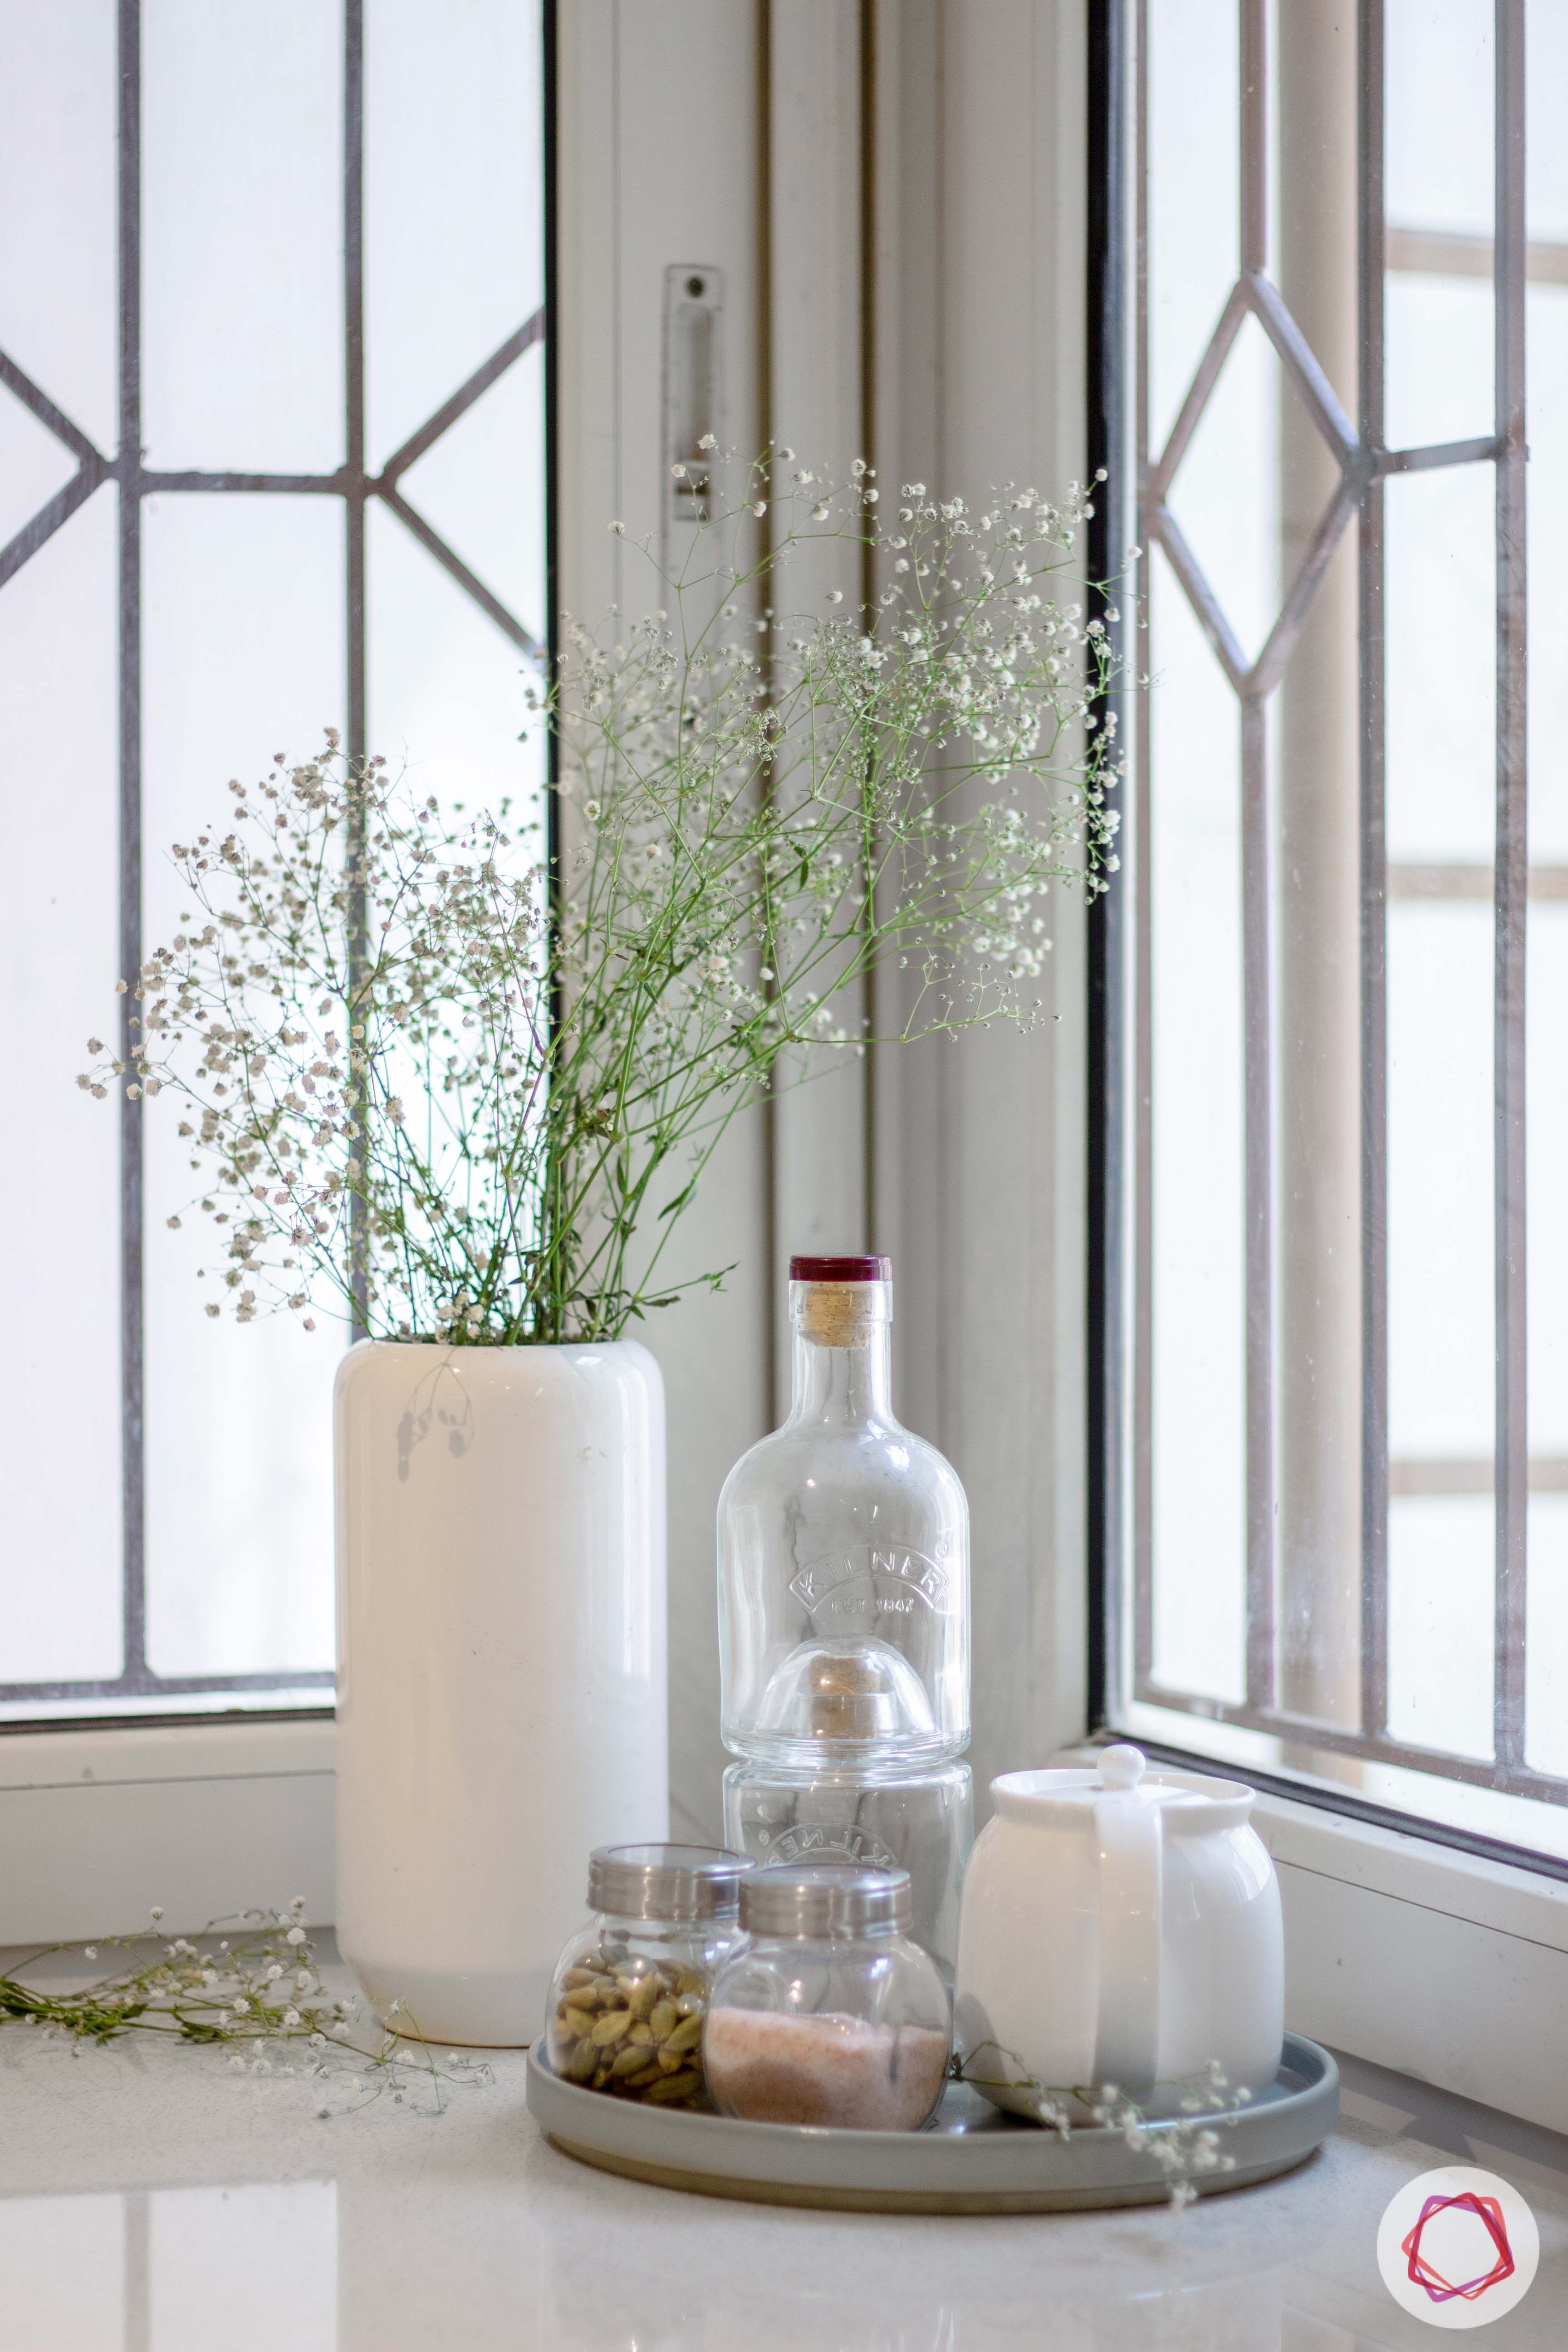 Brigade Millennium-Kitchen-Window-Vase-Flower